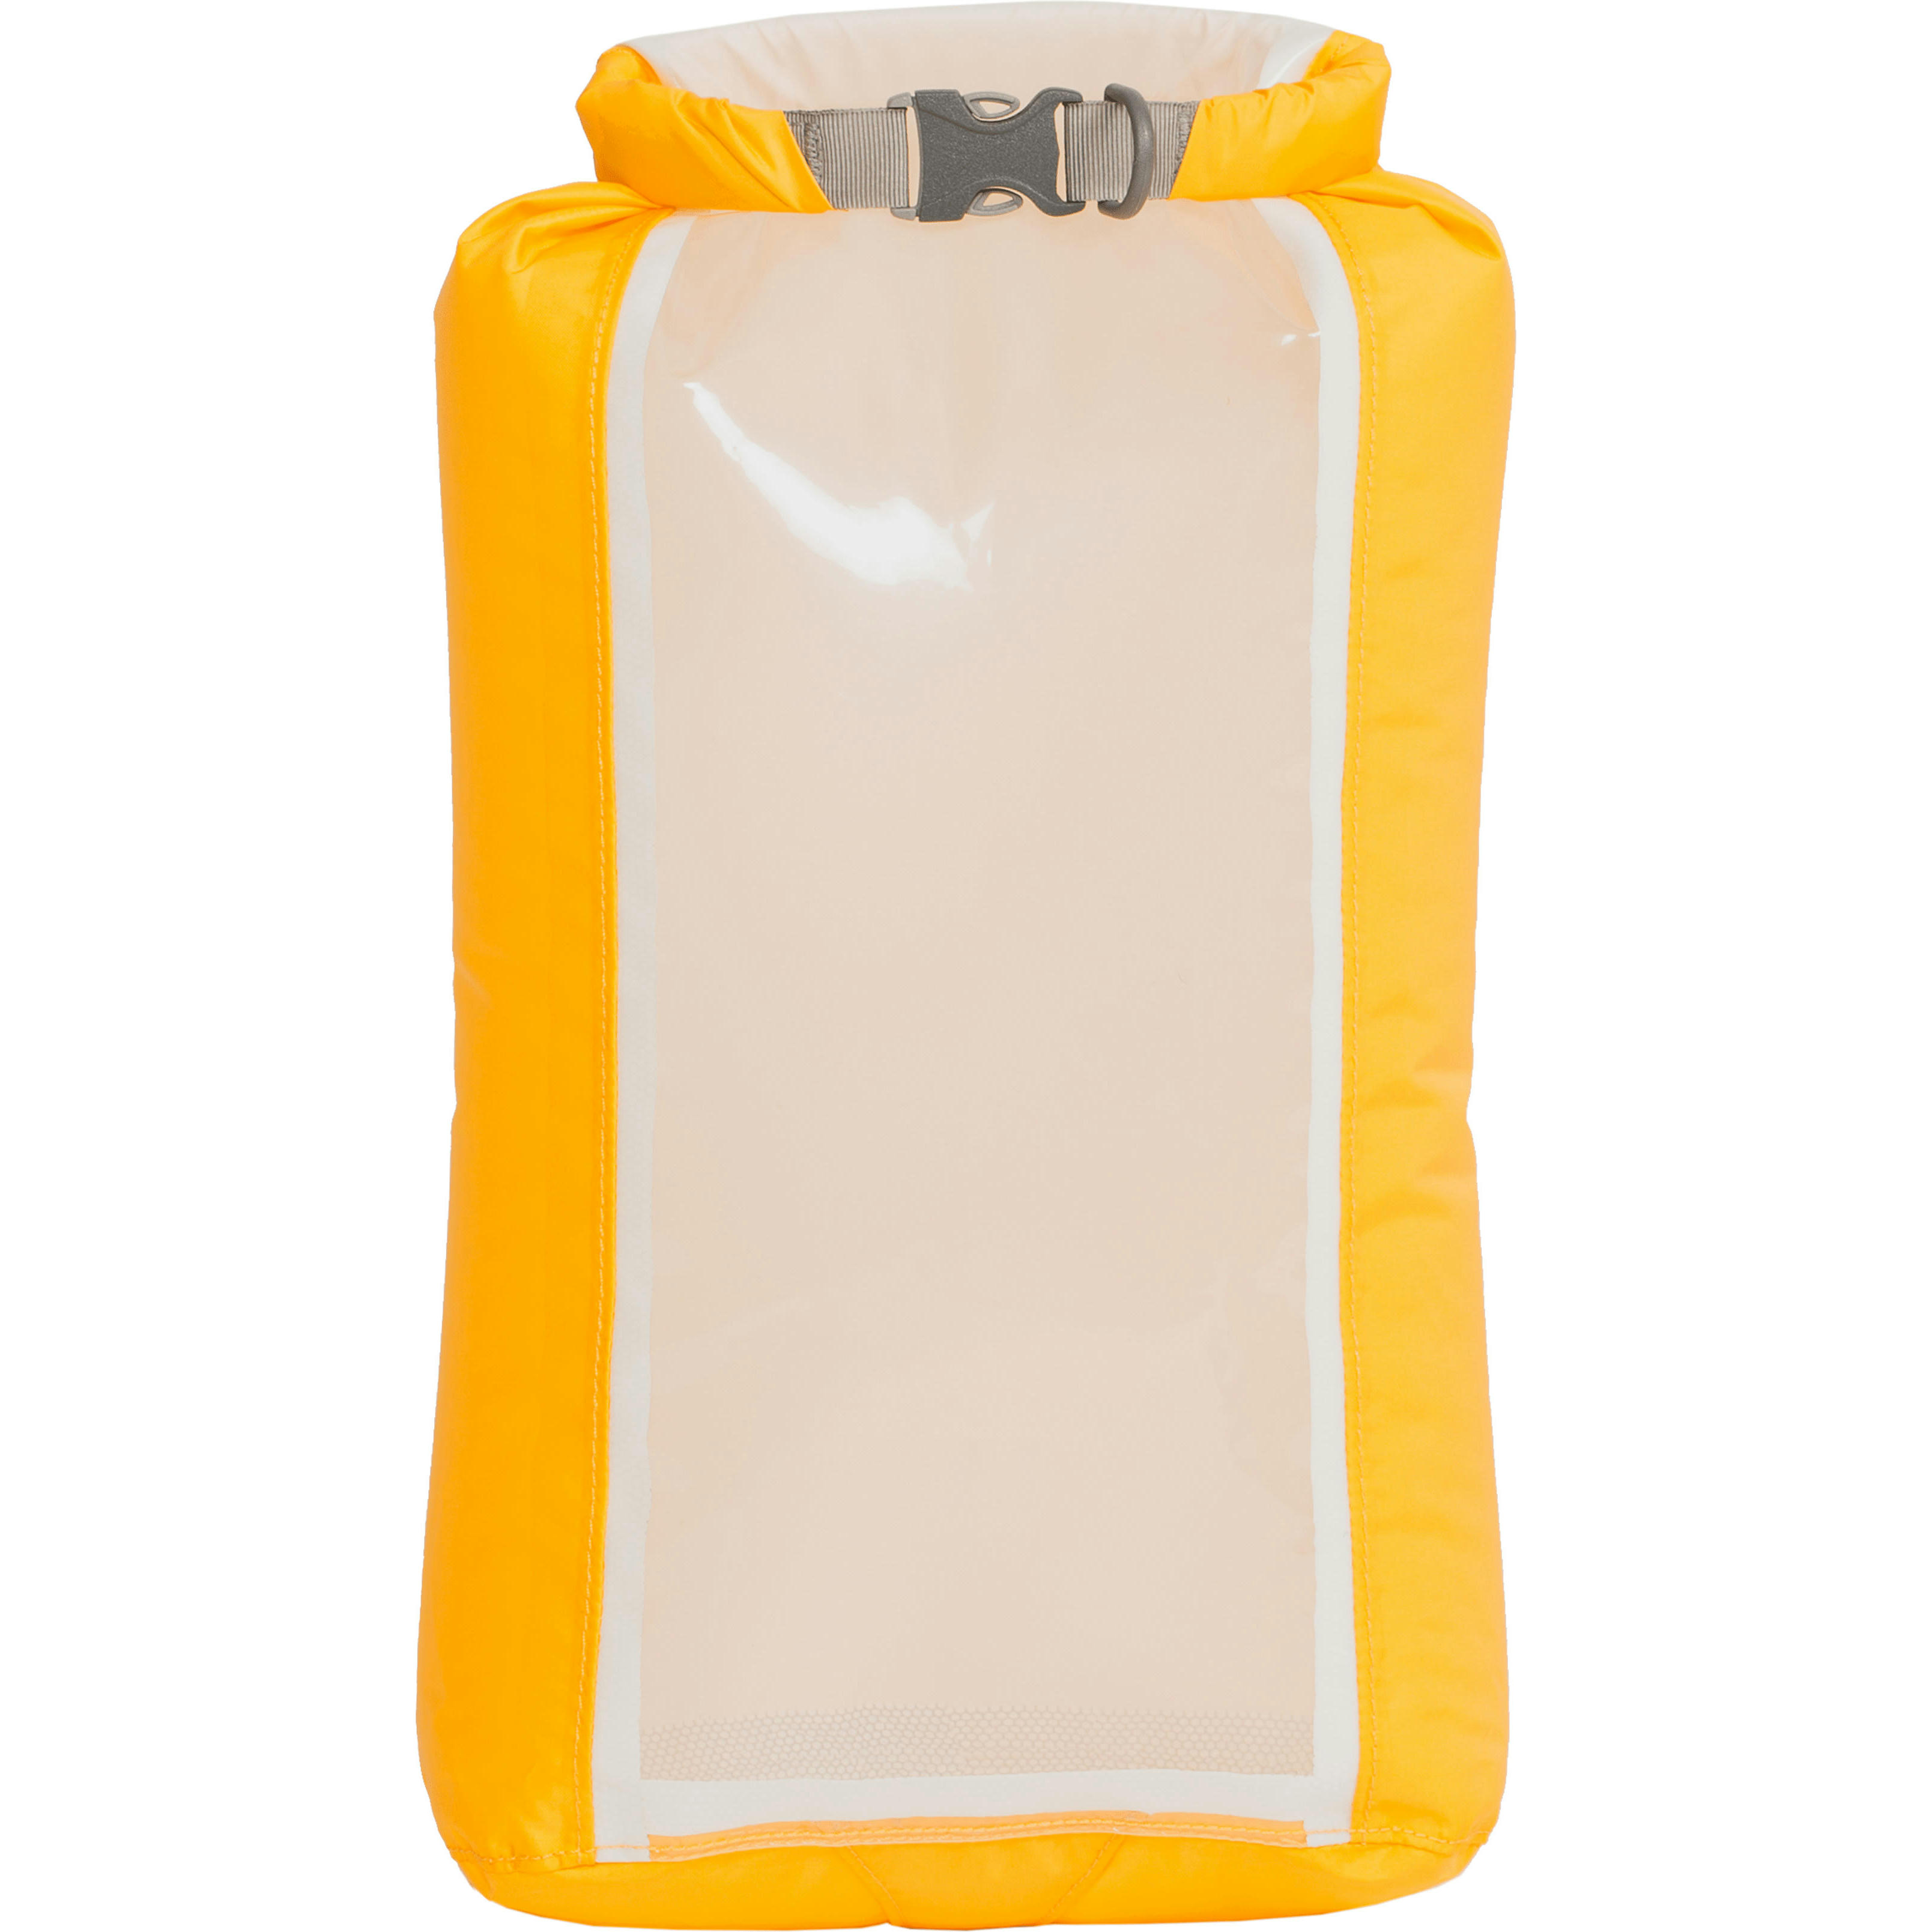 Гермомешок Exped Fold Drybag CS S yellow желтый фото 1